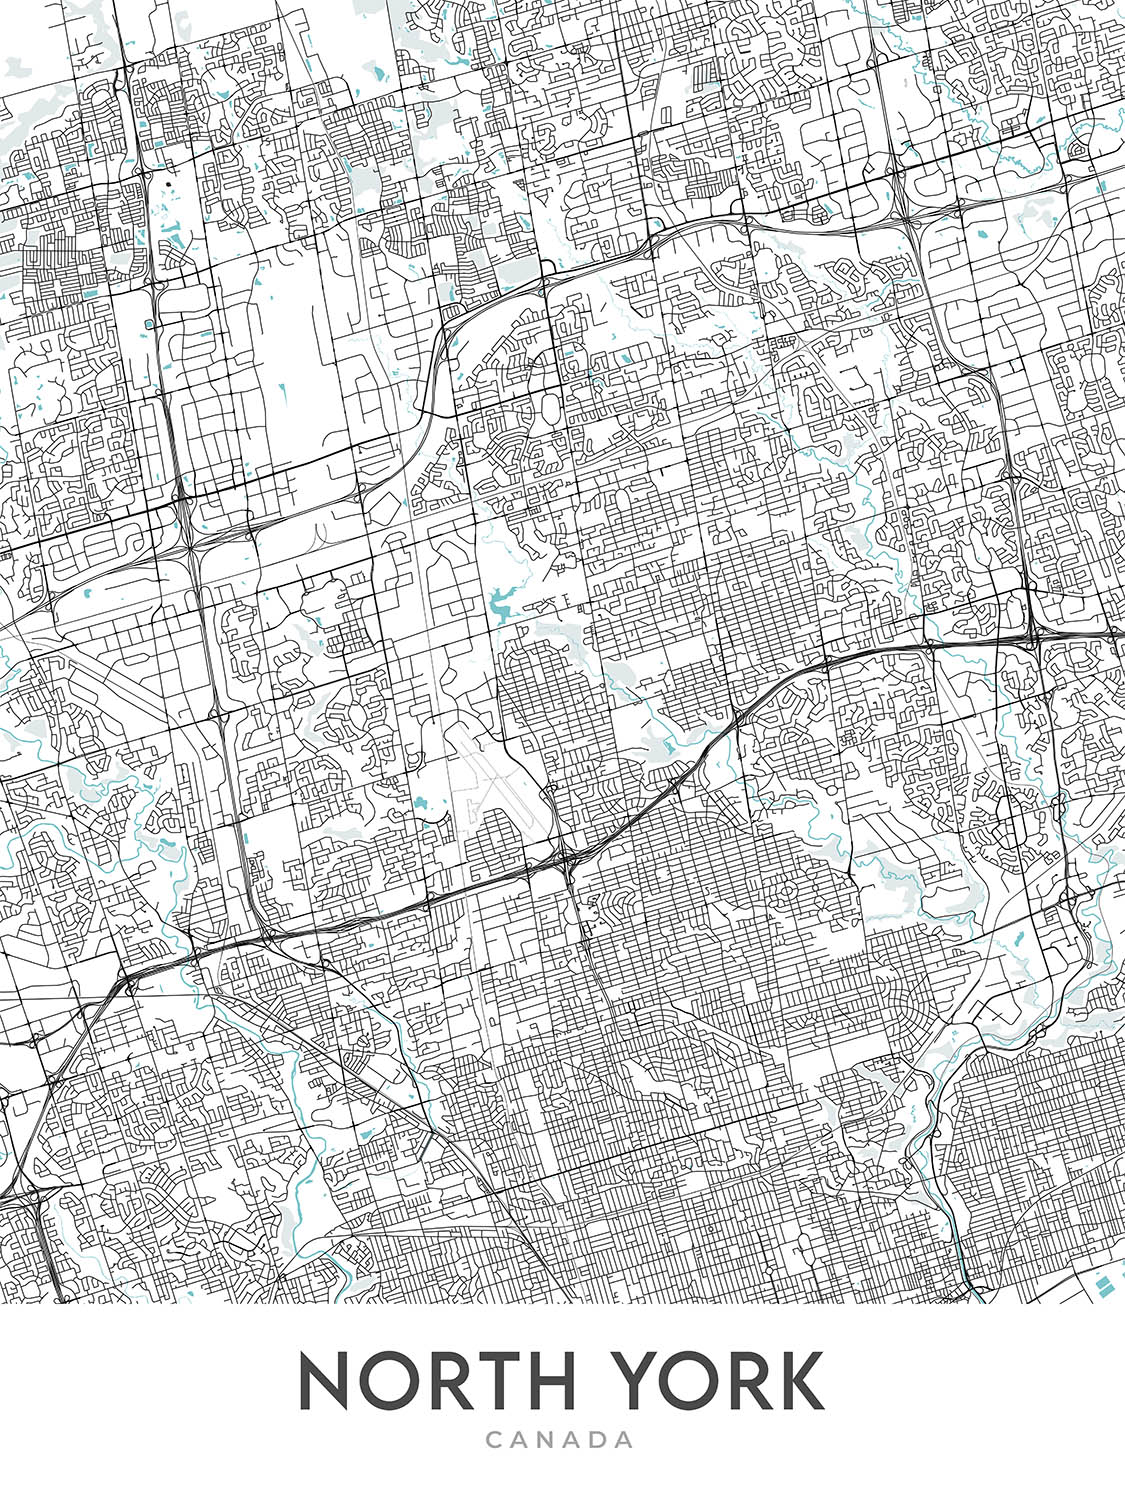 Mapa moderno de la ciudad de North York, Canadá: Don Mills, Casa Loma, Hwy 401, Yonge St, North York Civic Center